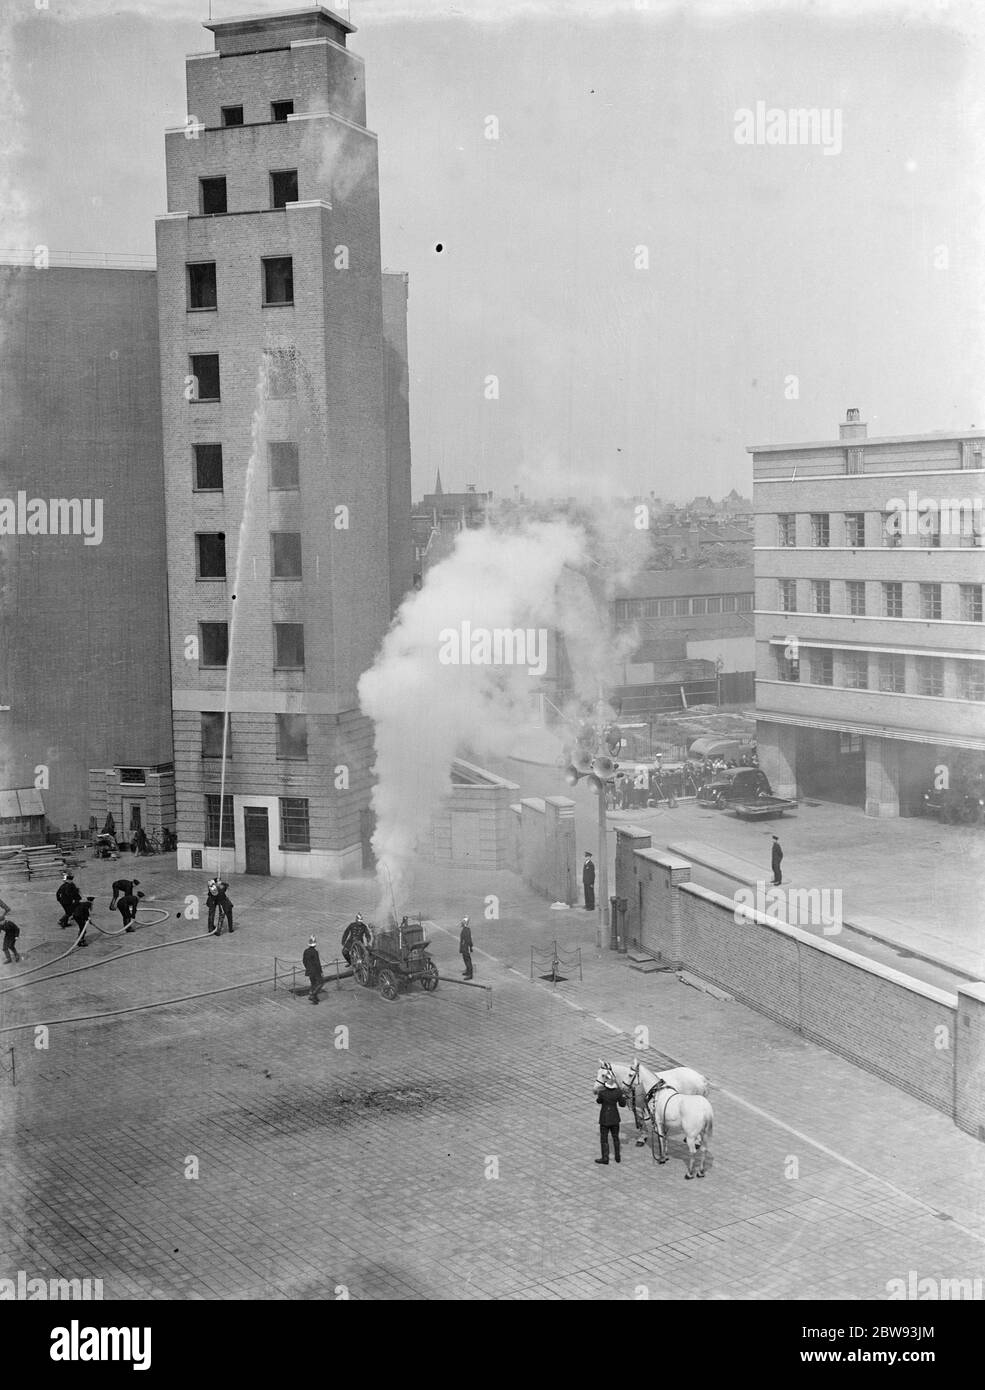 Eine Ausstellung der Londoner Feuerwehr in Lambeth, London. Die Feuerwehr pumpt während der Demonstration Wasser mit einer dampfbetriebenen Feuerwehrmaschine in das 7. Geschoss eines hohen Gebäudes. 1939 Stockfoto